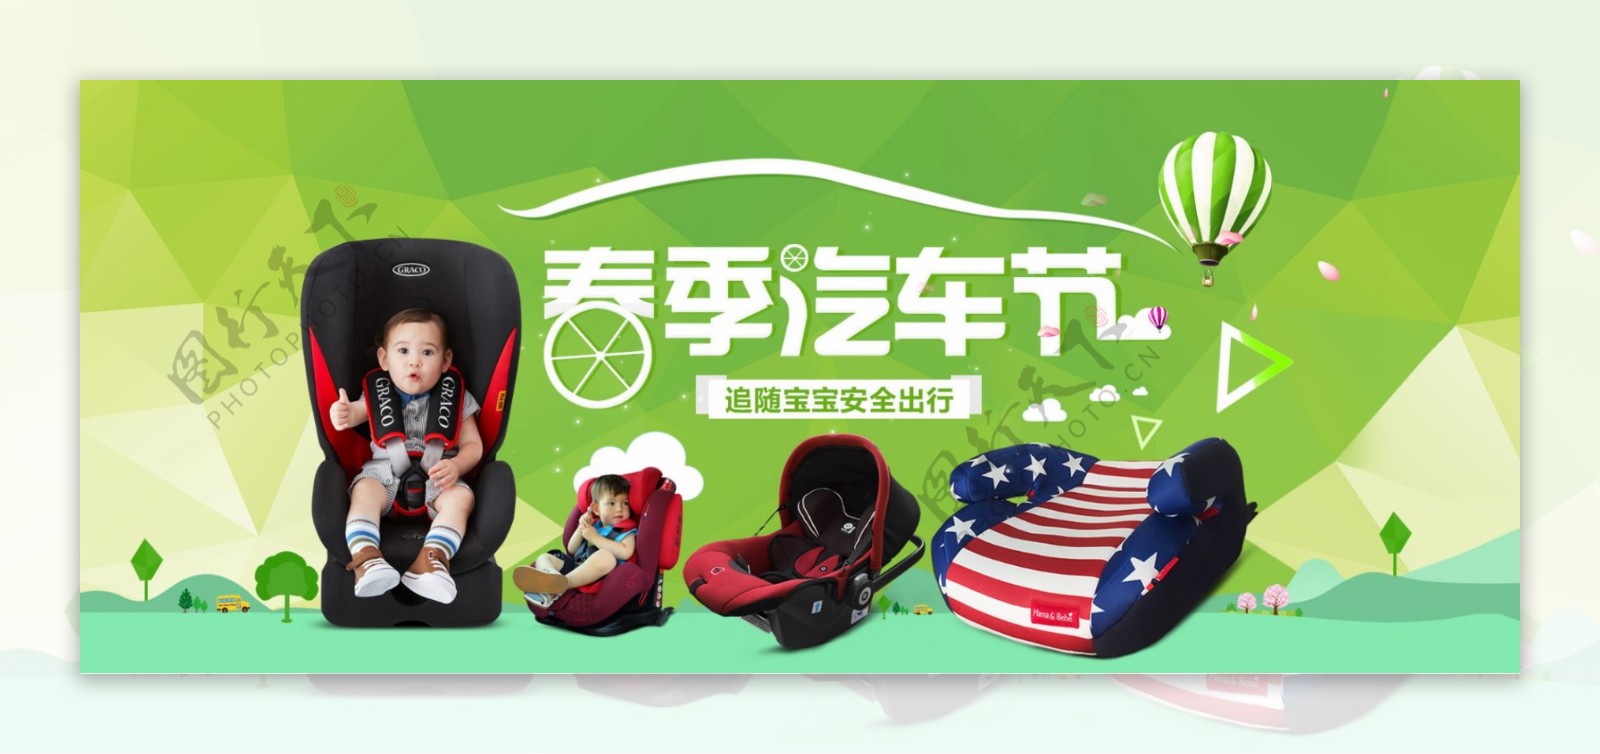 汽车节儿童安全座椅海报节日促销图